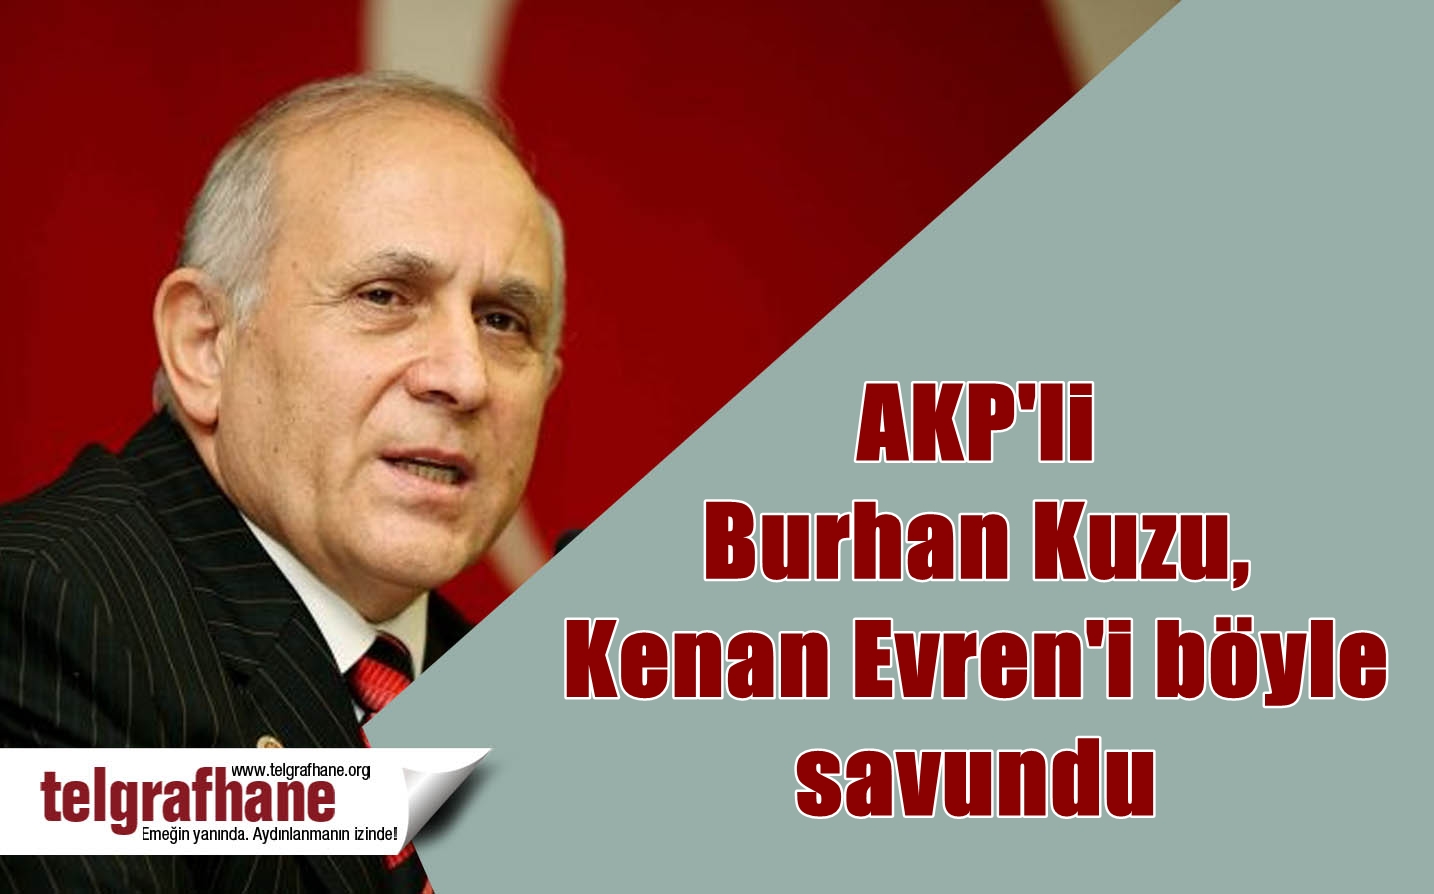 AKP’li Burhan Kuzu, Kenan Evren’i böyle savundu